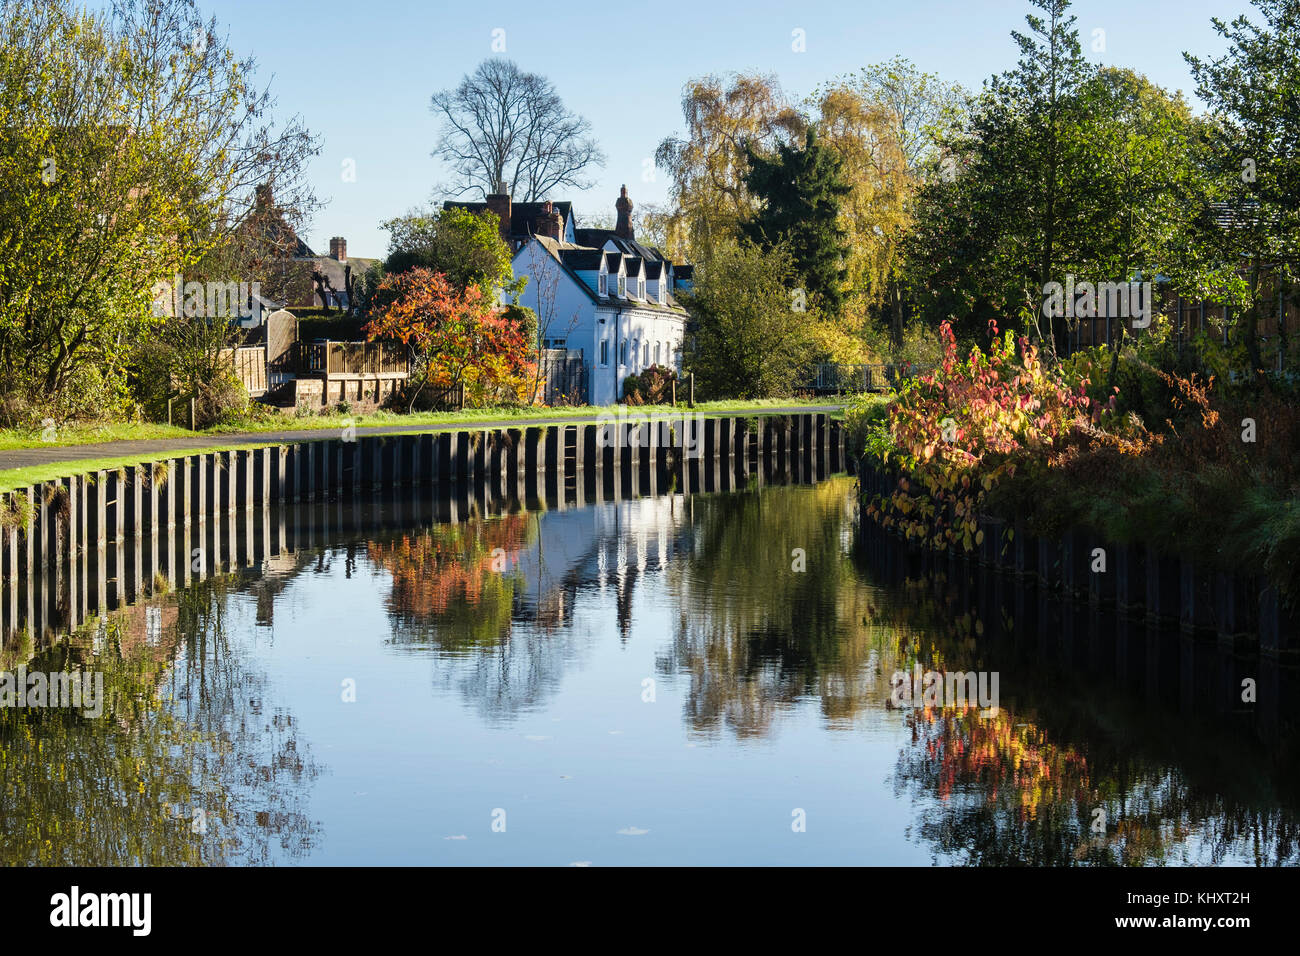 Le canal de Droitwich en vignes Park avec de l'eau reflétant la scène d'automne. Droitwich Spa, Worcestershire, Angleterre, Royaume-Uni, Angleterre Banque D'Images